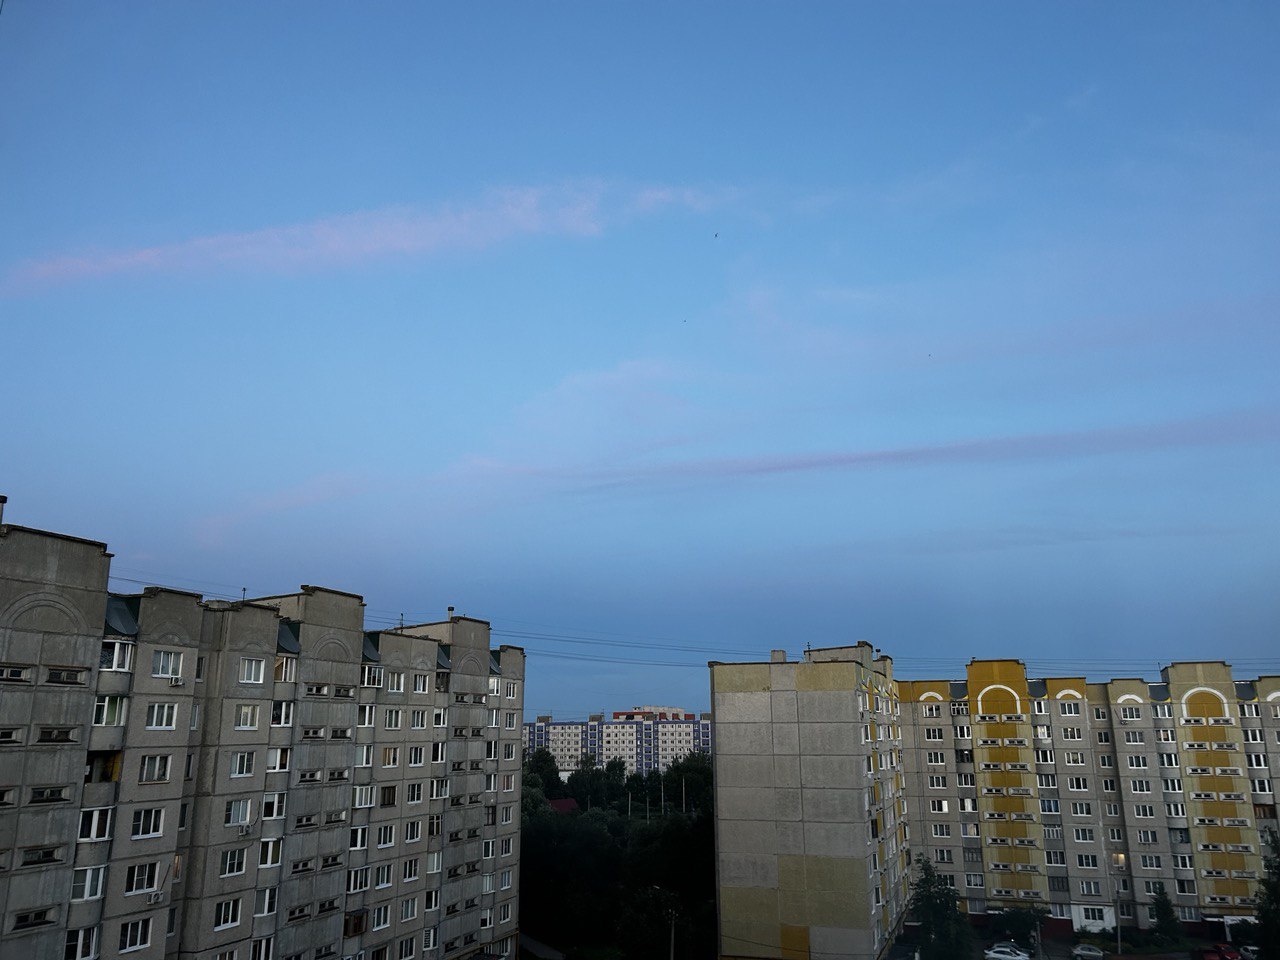 Жители Владимирской области смогут увидеть звездопад